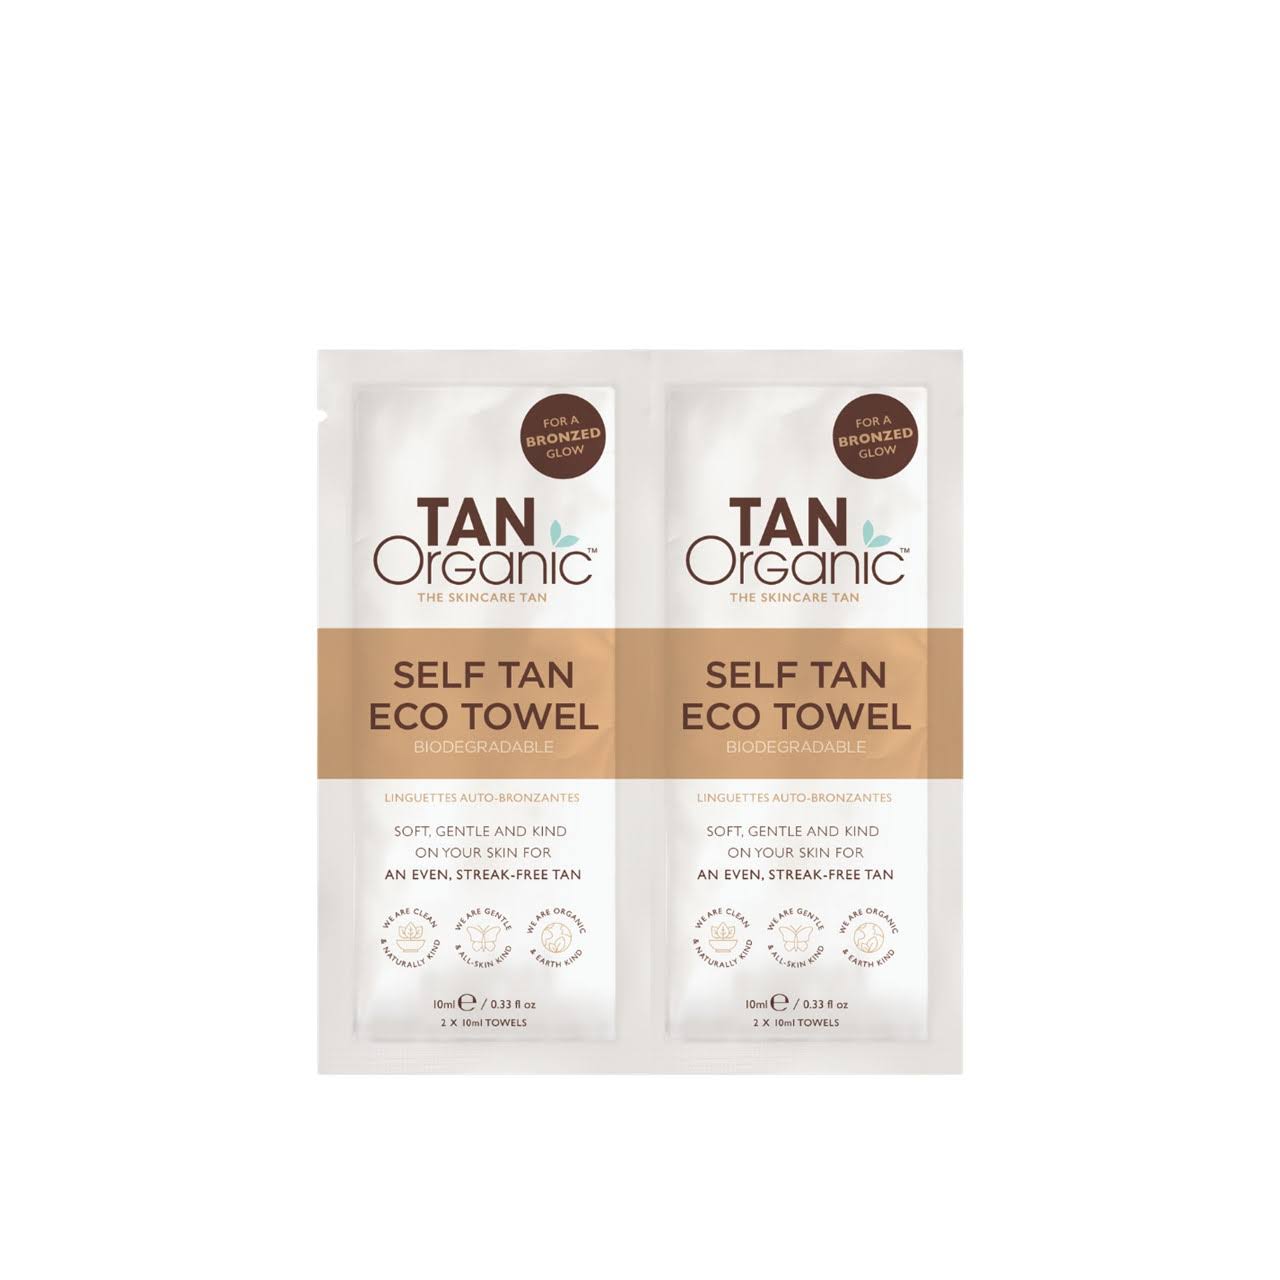 TanOrganic Self Tan Eco Towels 2 Count